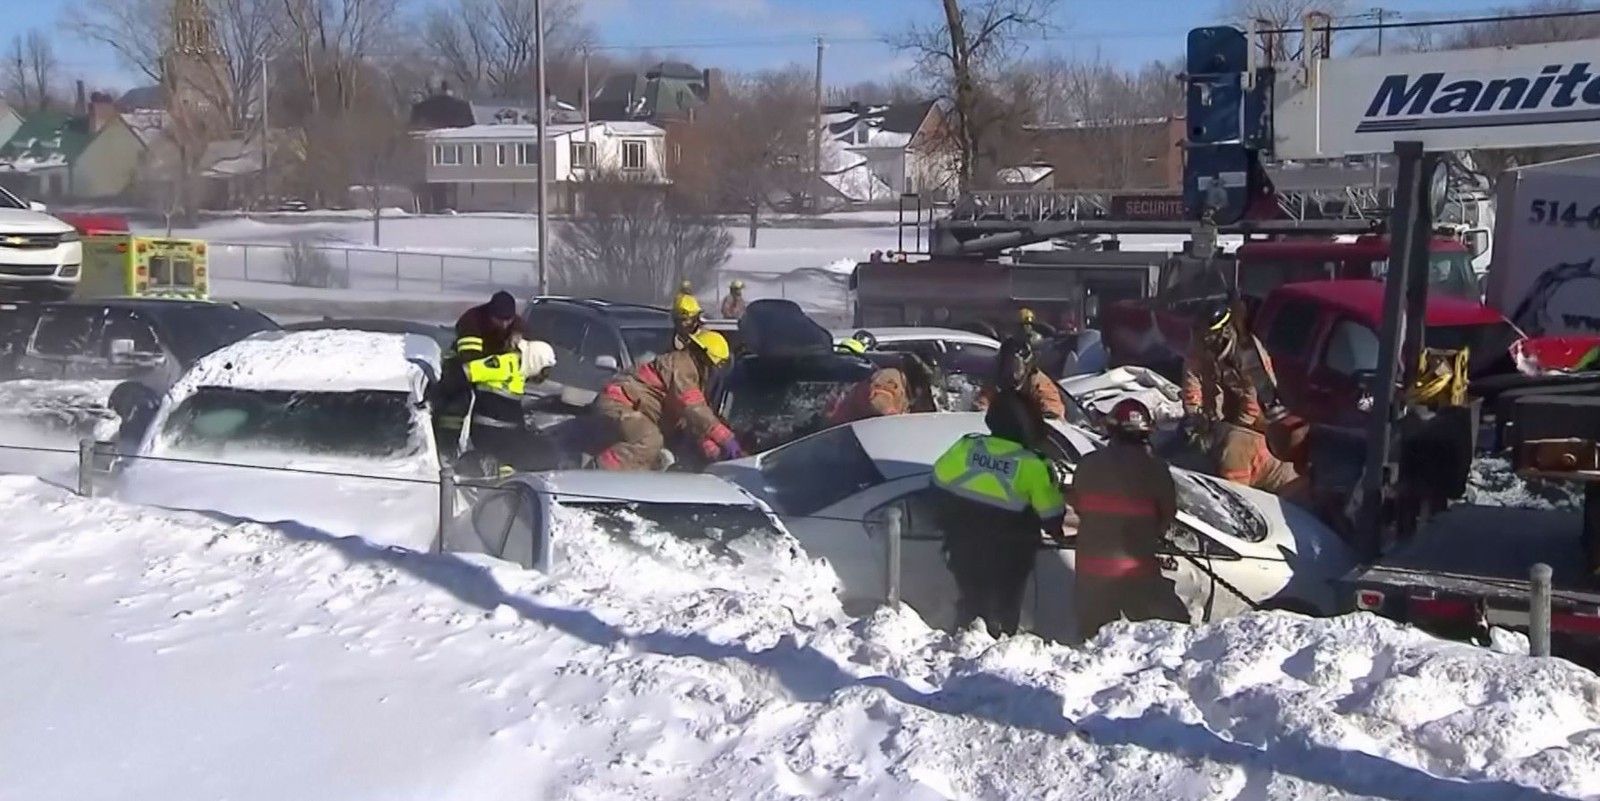 Engavetamento com mais de 200 carros deixa 2 mortos no Canadá